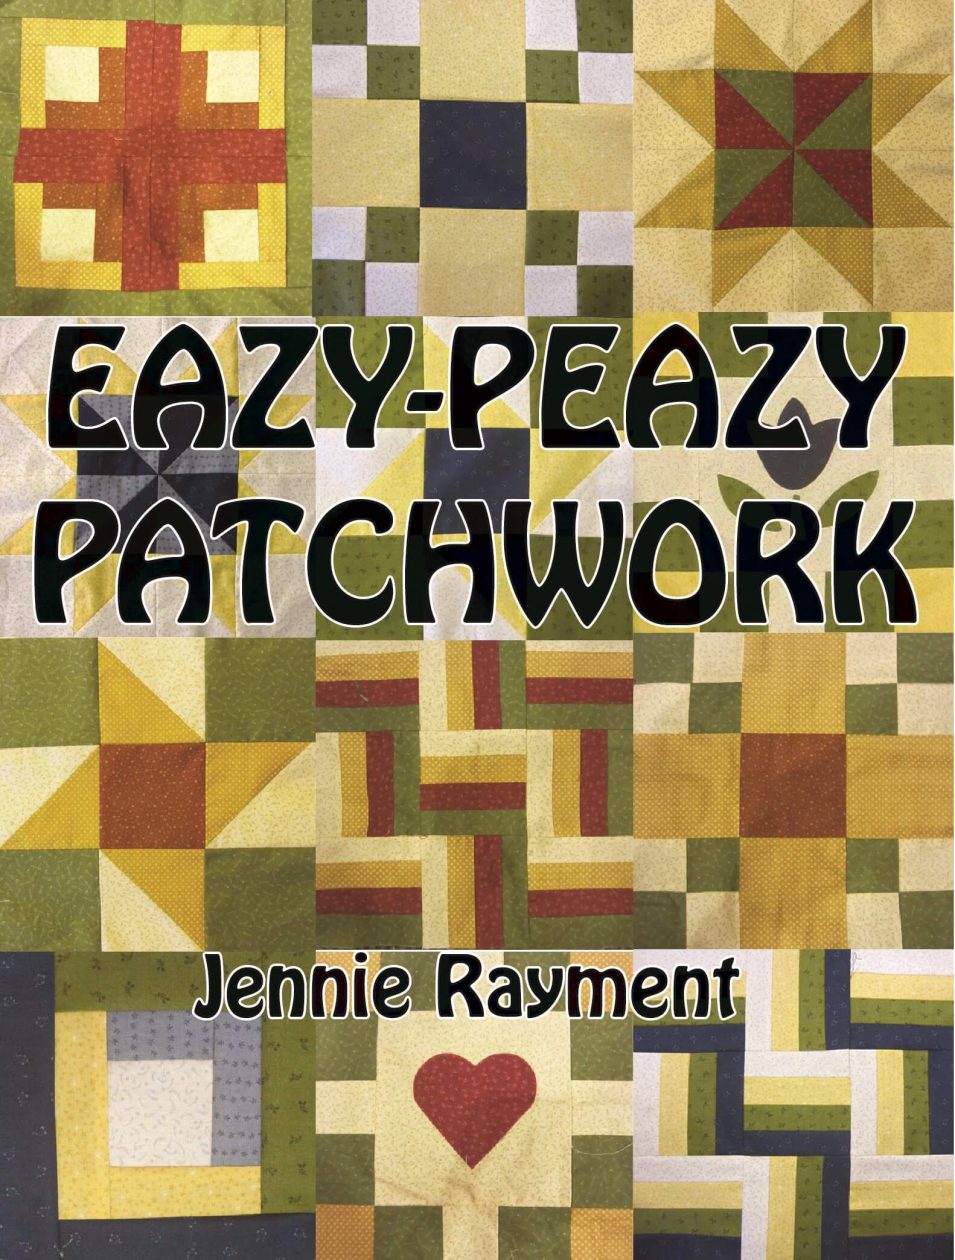 JENNIE RAYMENT - EZ PEAZY PATCHWORK DVD